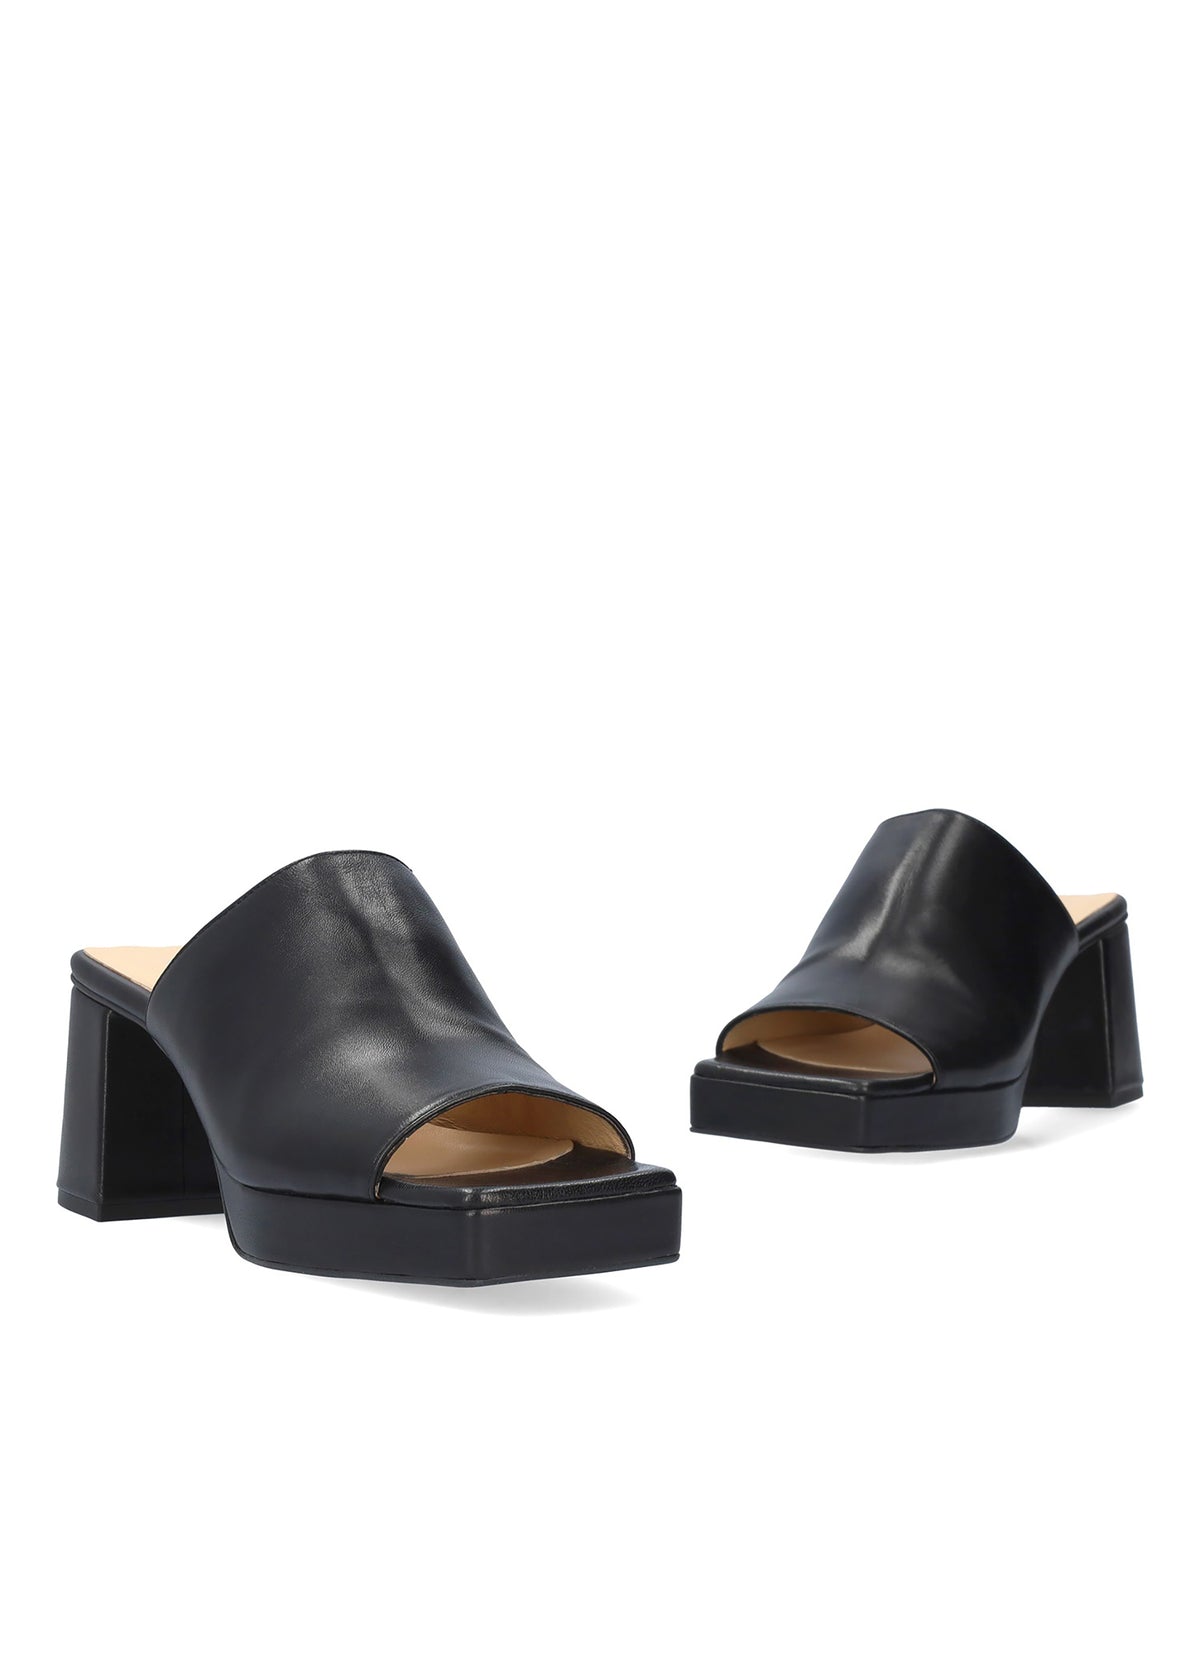 Stiletto heel sandals - Adara, black leather